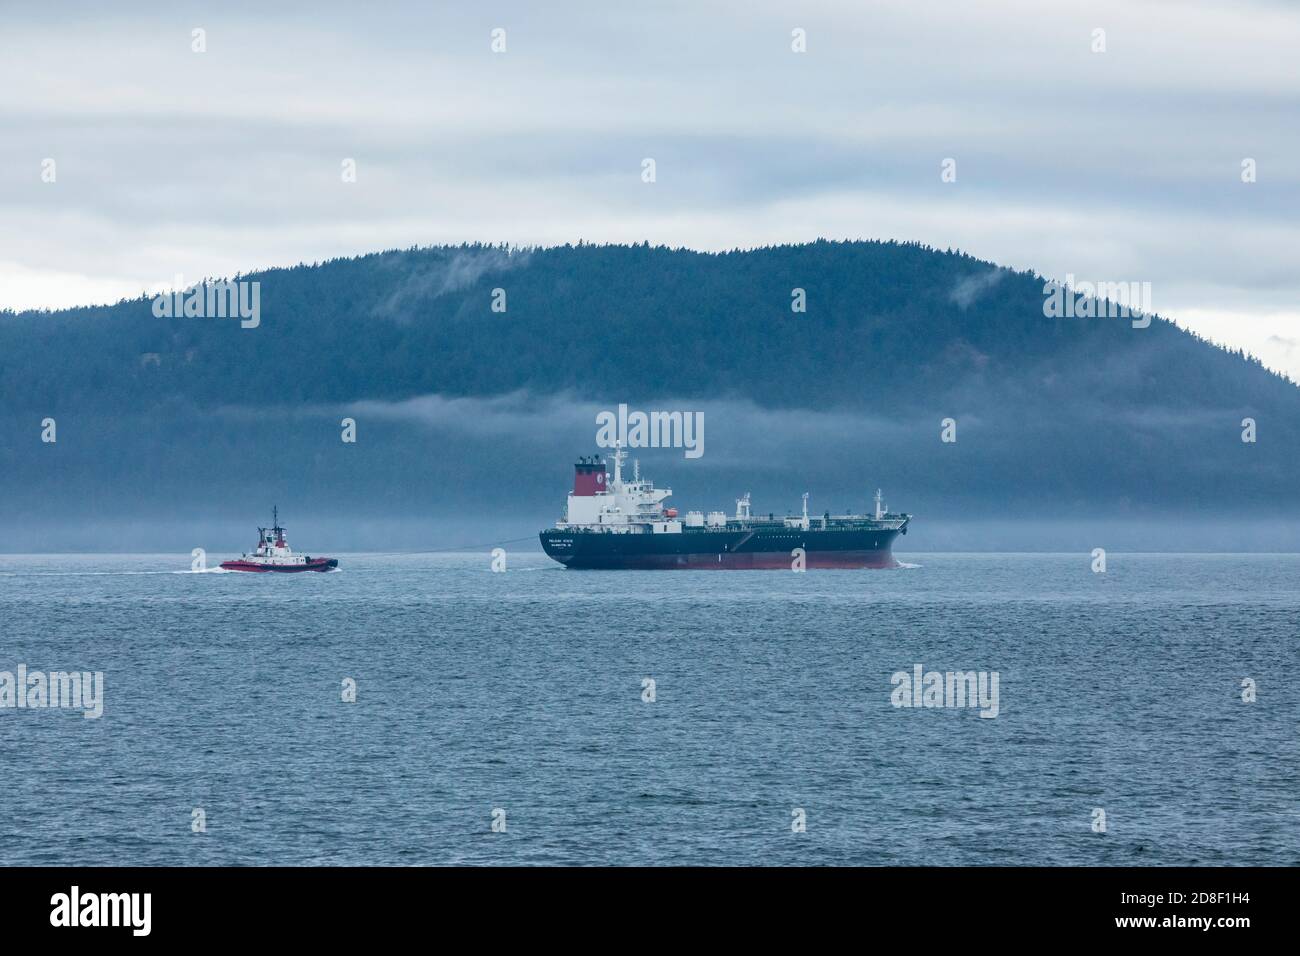 Un cargo pétrolier escorté par un remorqueur au sud de l'île Cypress dans les îles San Juan par une journée nuageux, détroit de Rosario, Washington, États-Unis. Banque D'Images